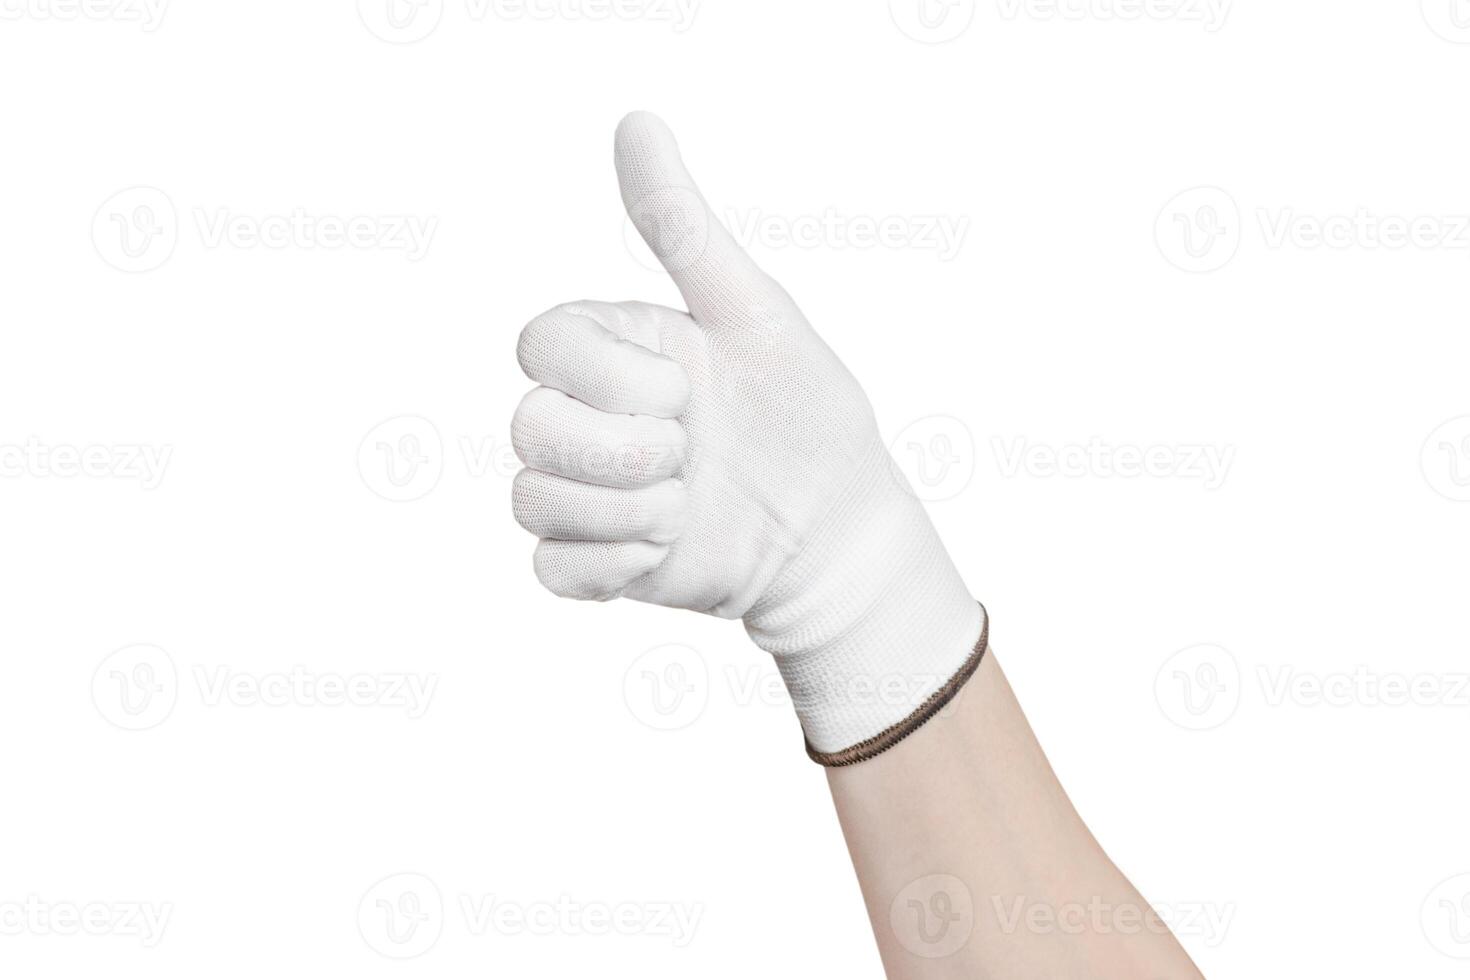 collage de manos pulgar arriba manchado con pintar y manos en construcción protector guantes. utilizando guantes cuando pintura y reparando aislado foto